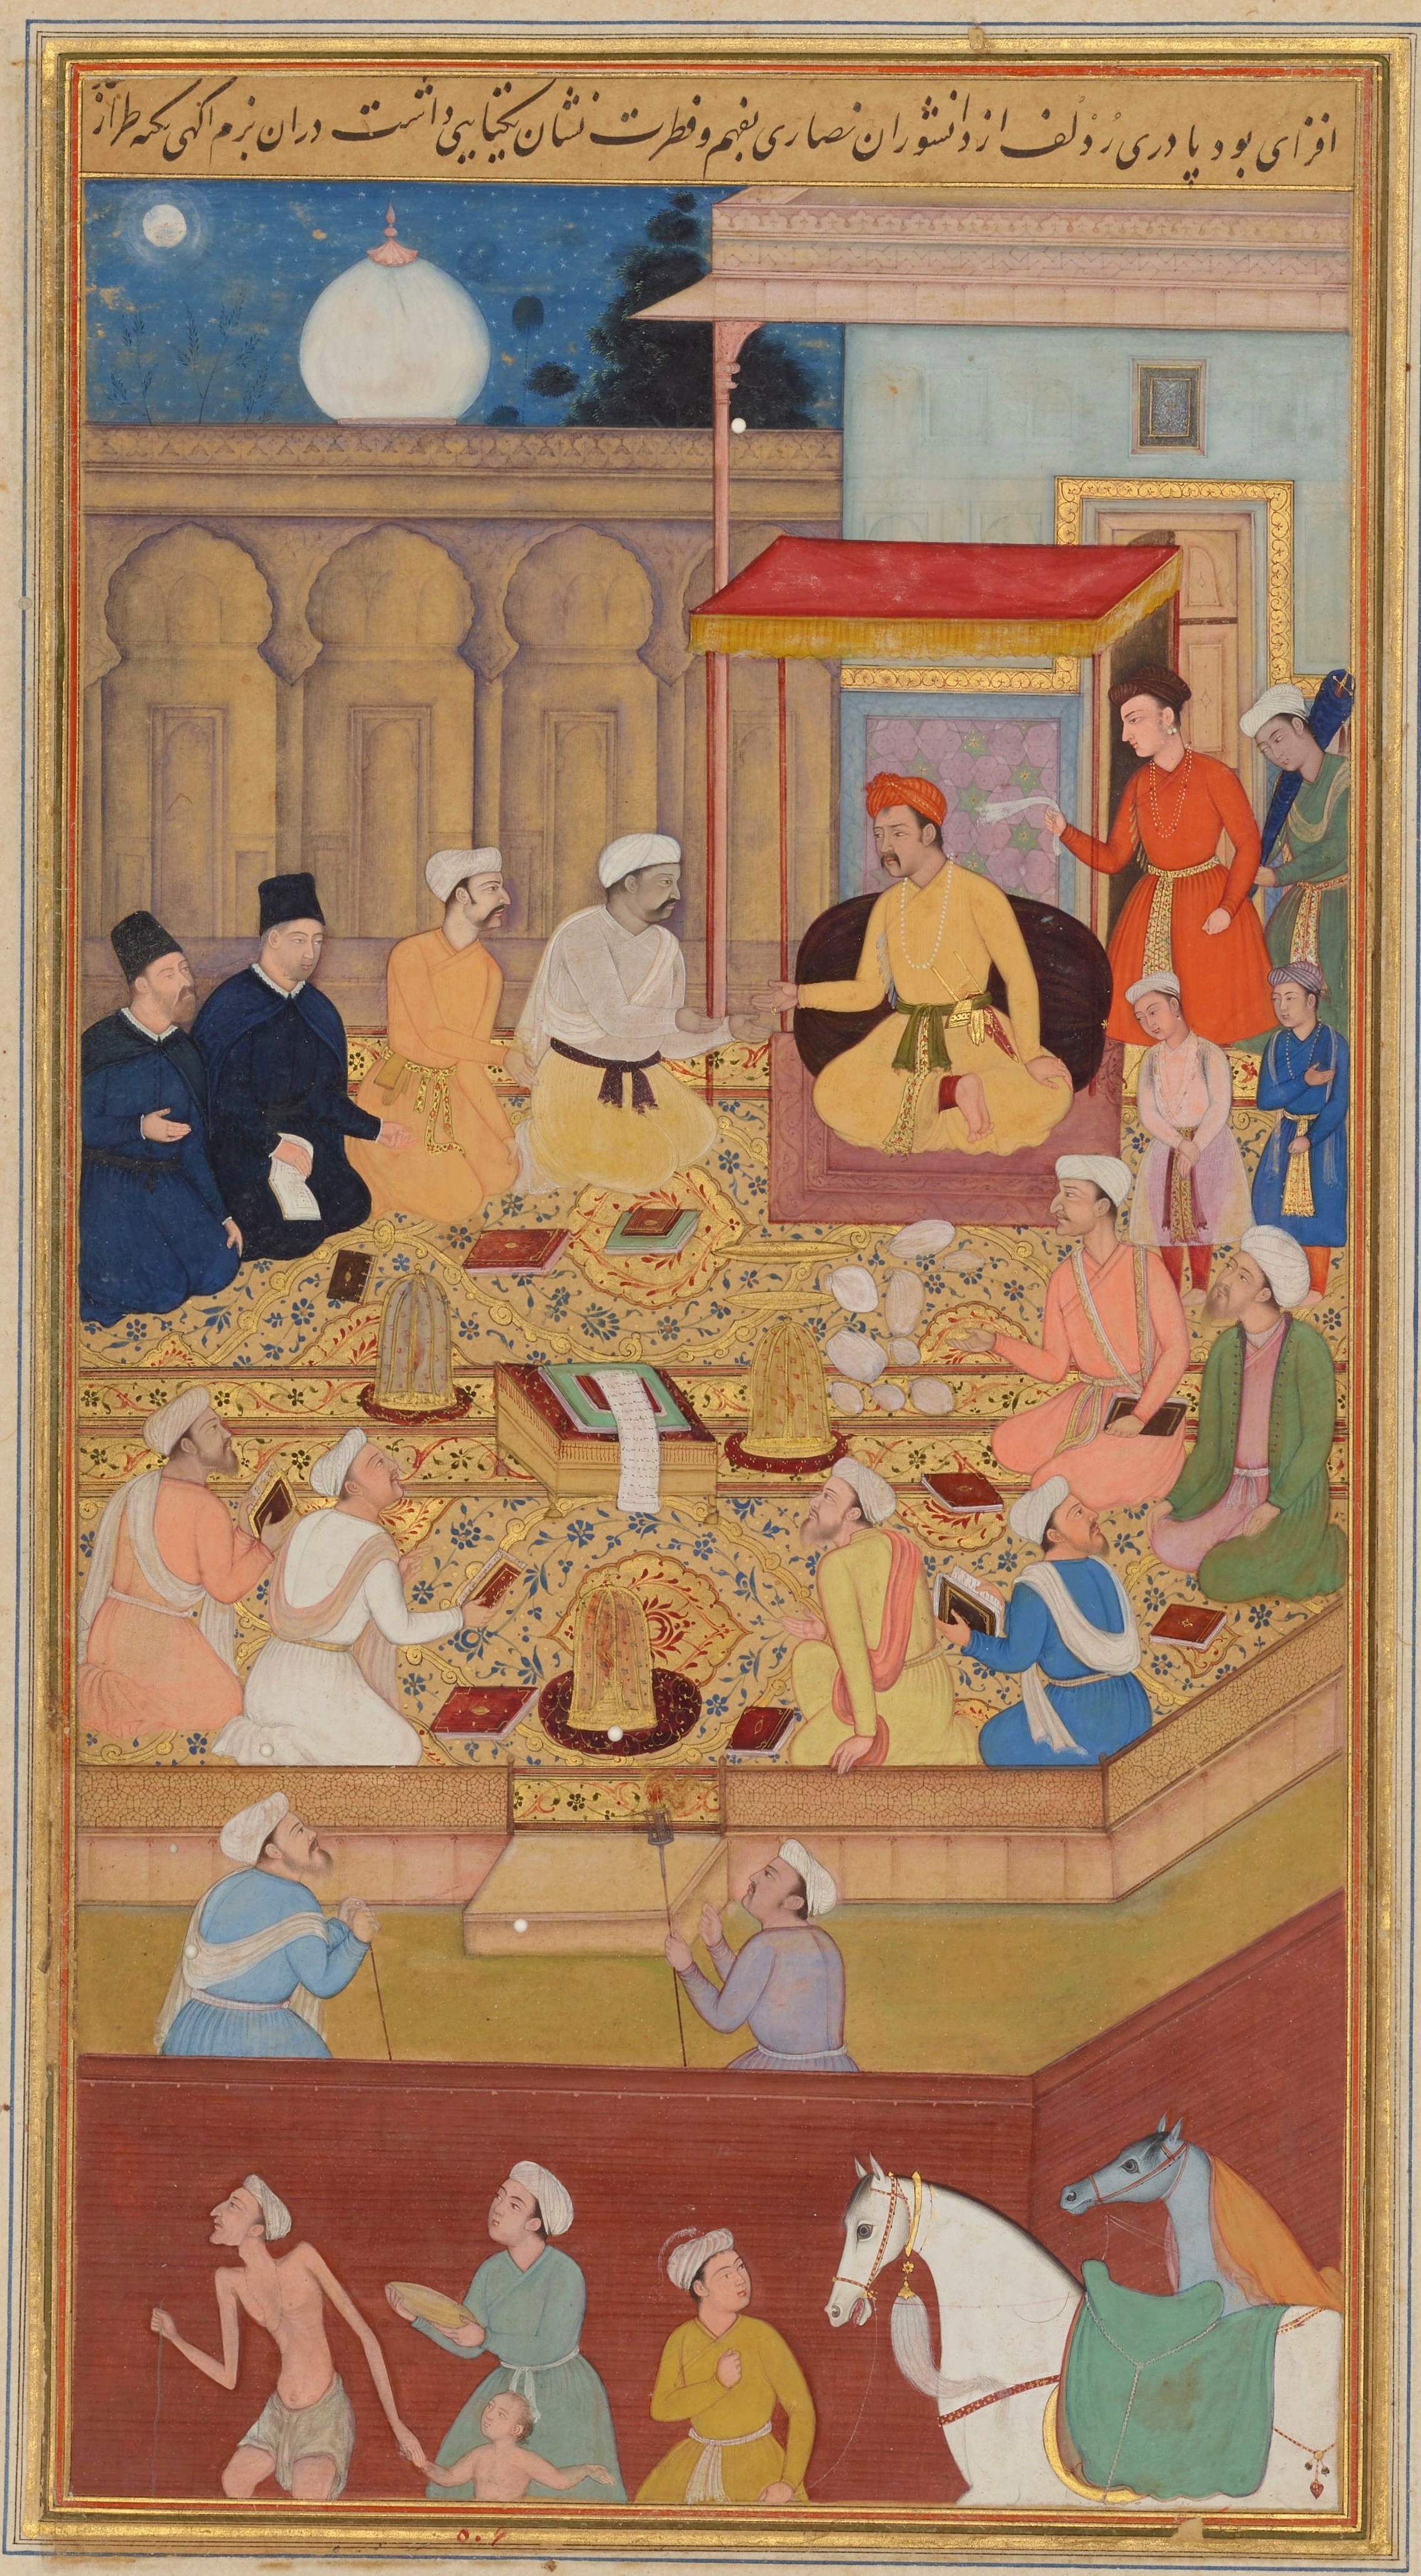 於阿克巴之廷的基督會士群 by Nar Singh - 1603 - 1605 